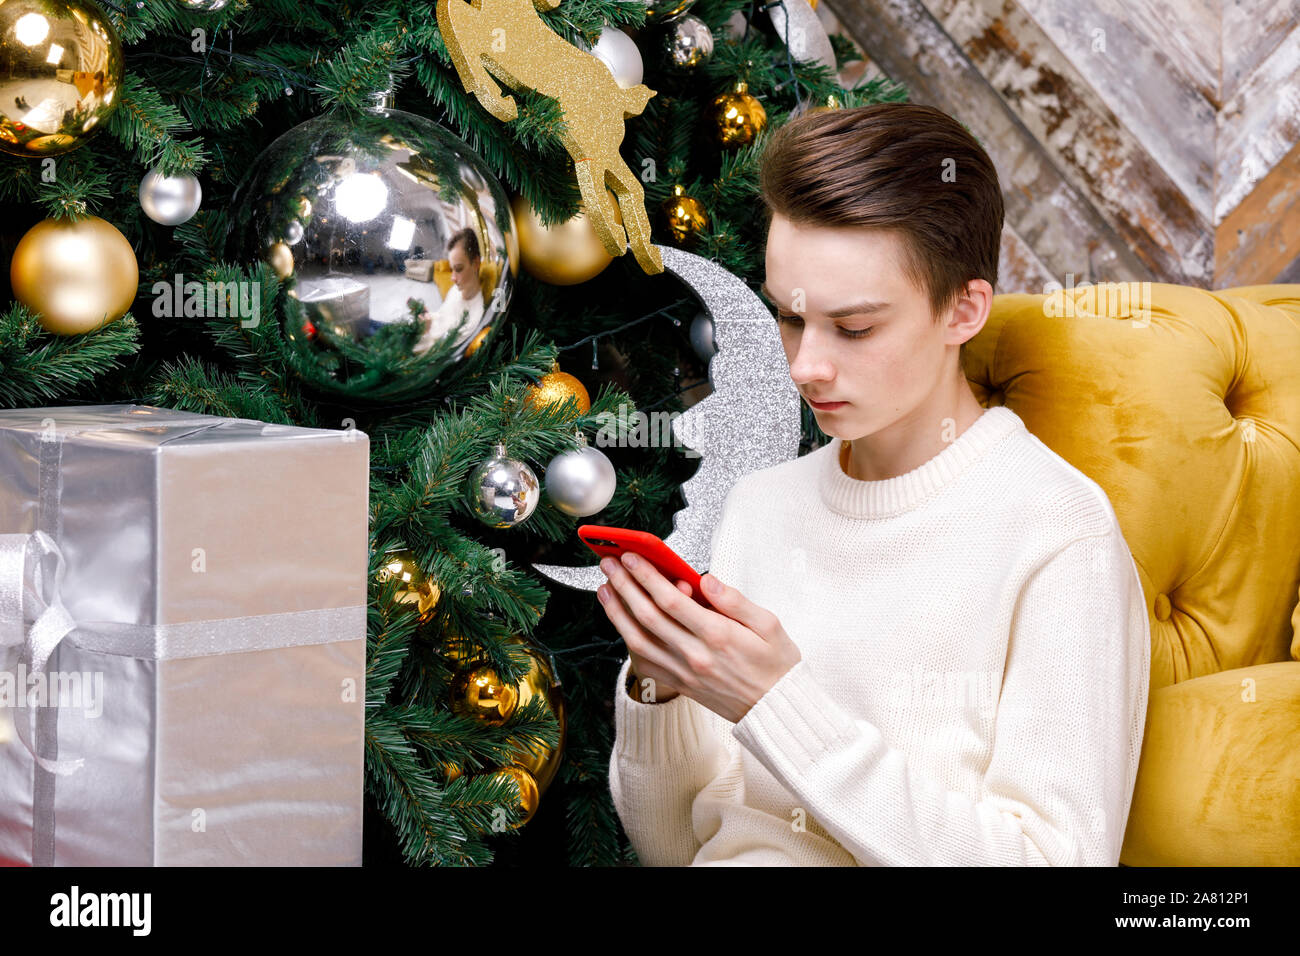 Teenager Junge allein sitzen auf einem Fußboden durch Weihnachtsbaum mit Geschenken konzentrierte sich nur auf sein Smartphone Messaging oder Kontrolle soziale Medien - Smombie Urlaub Stockfoto